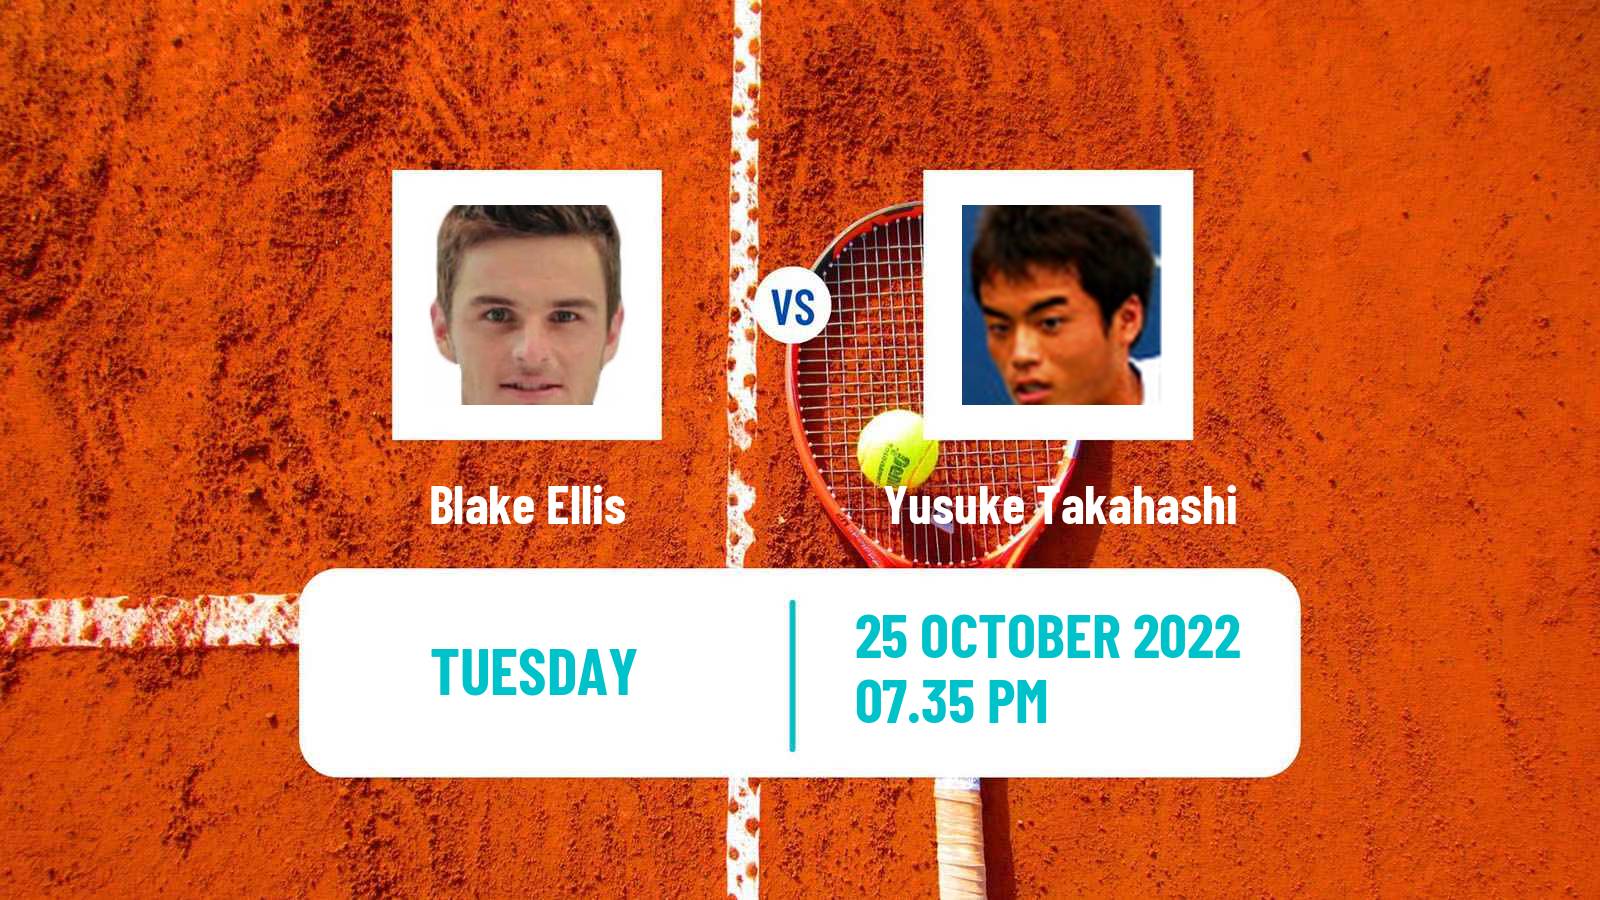 Tennis ATP Challenger Blake Ellis - Yusuke Takahashi